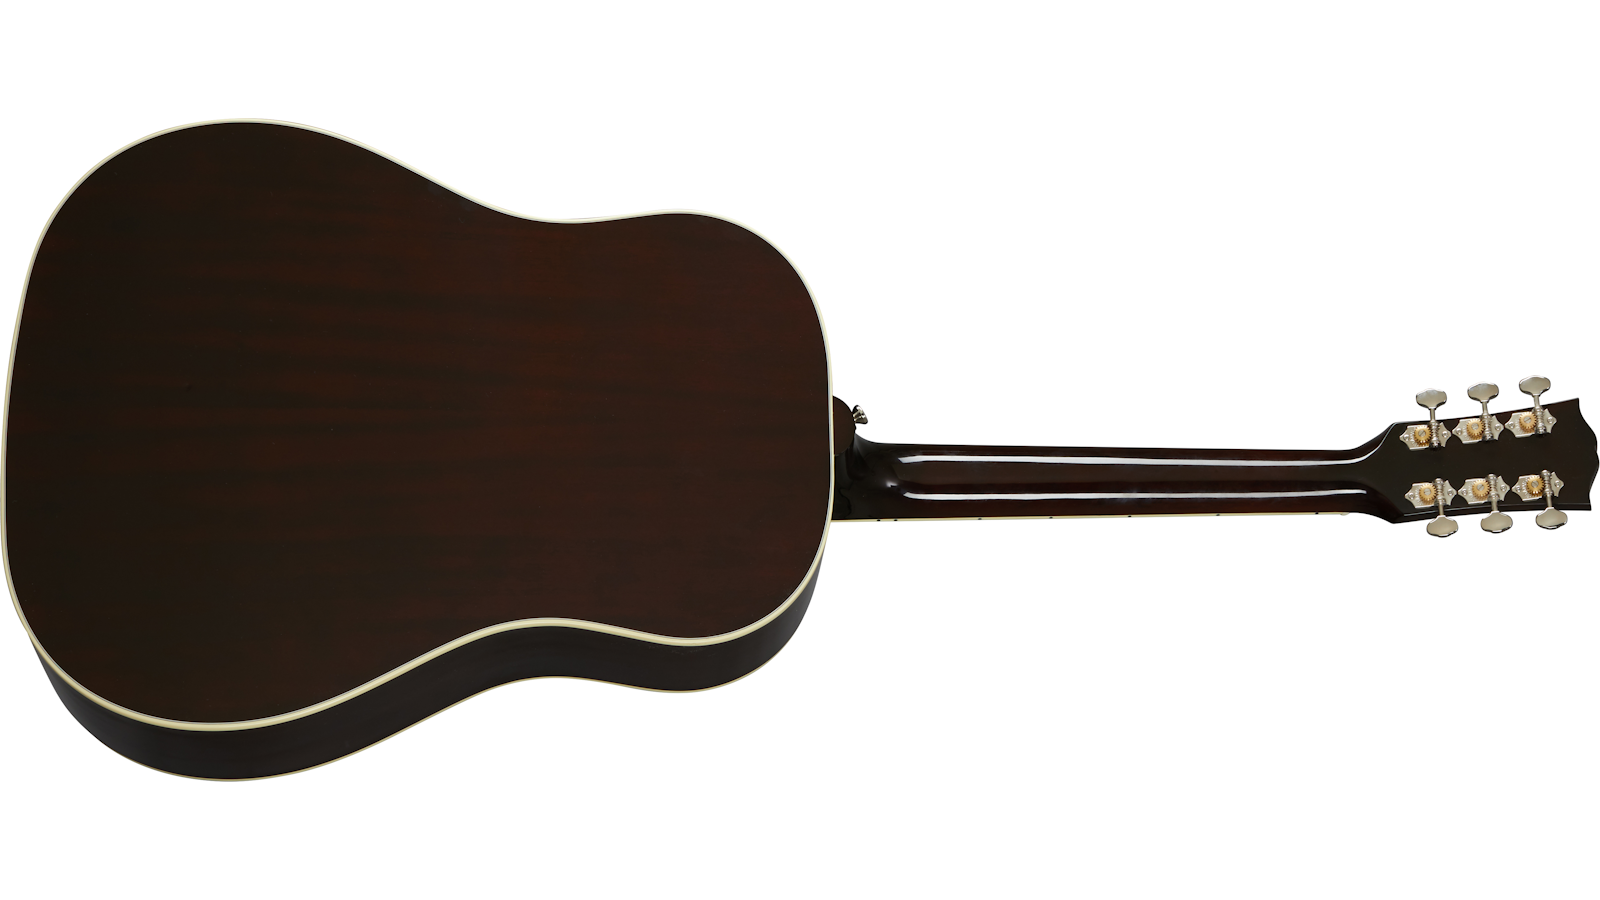 Gibson Southern Jumbo Original Dreanought Epicea Acajou Rw - Vintage Sunburst - Electro acoustic guitar - Variation 1